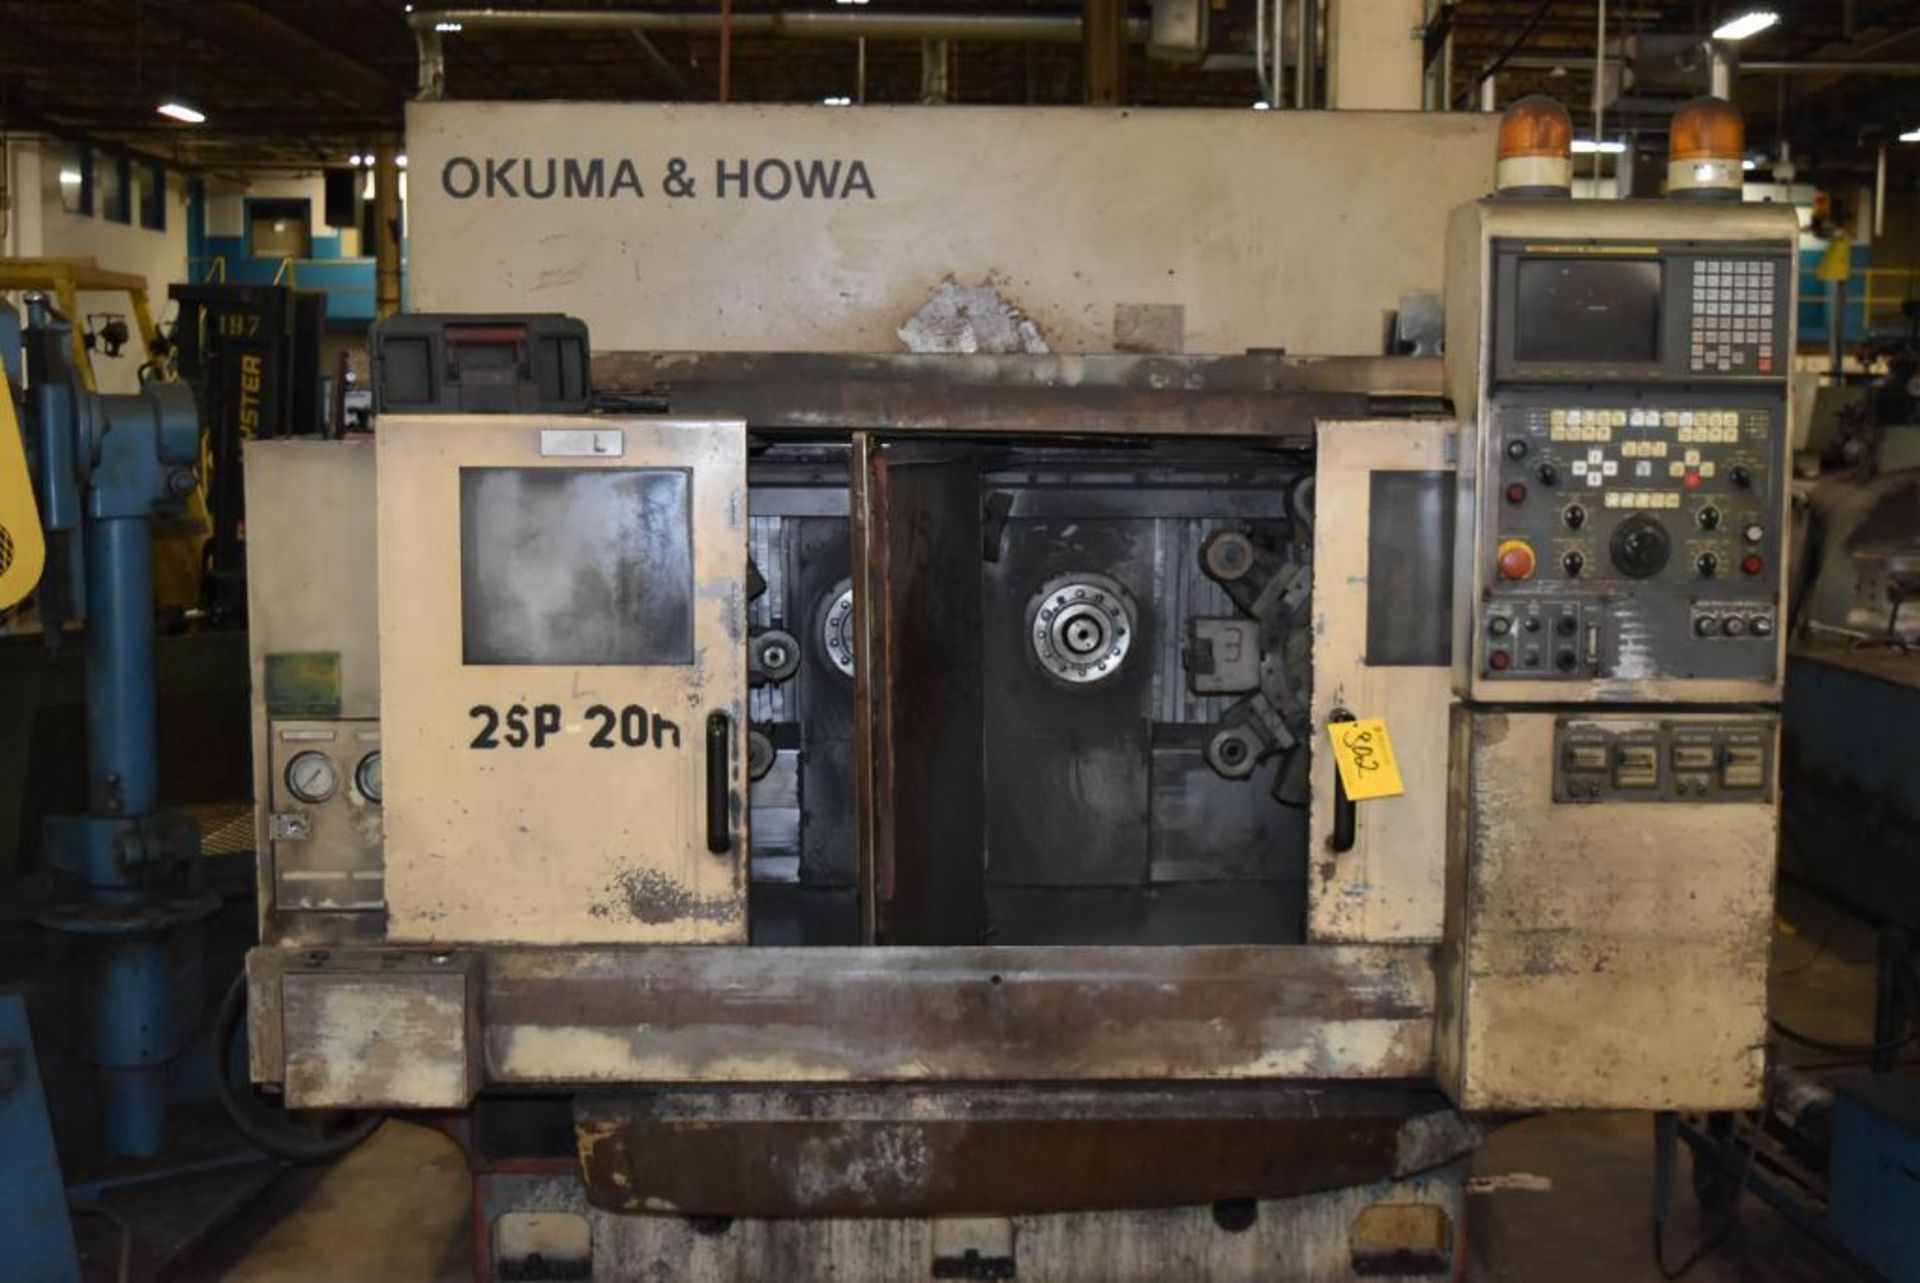 Okuma & Howa Model 2SP-15H CNC Dual Spindle Horizontal Machining Center/Lathe